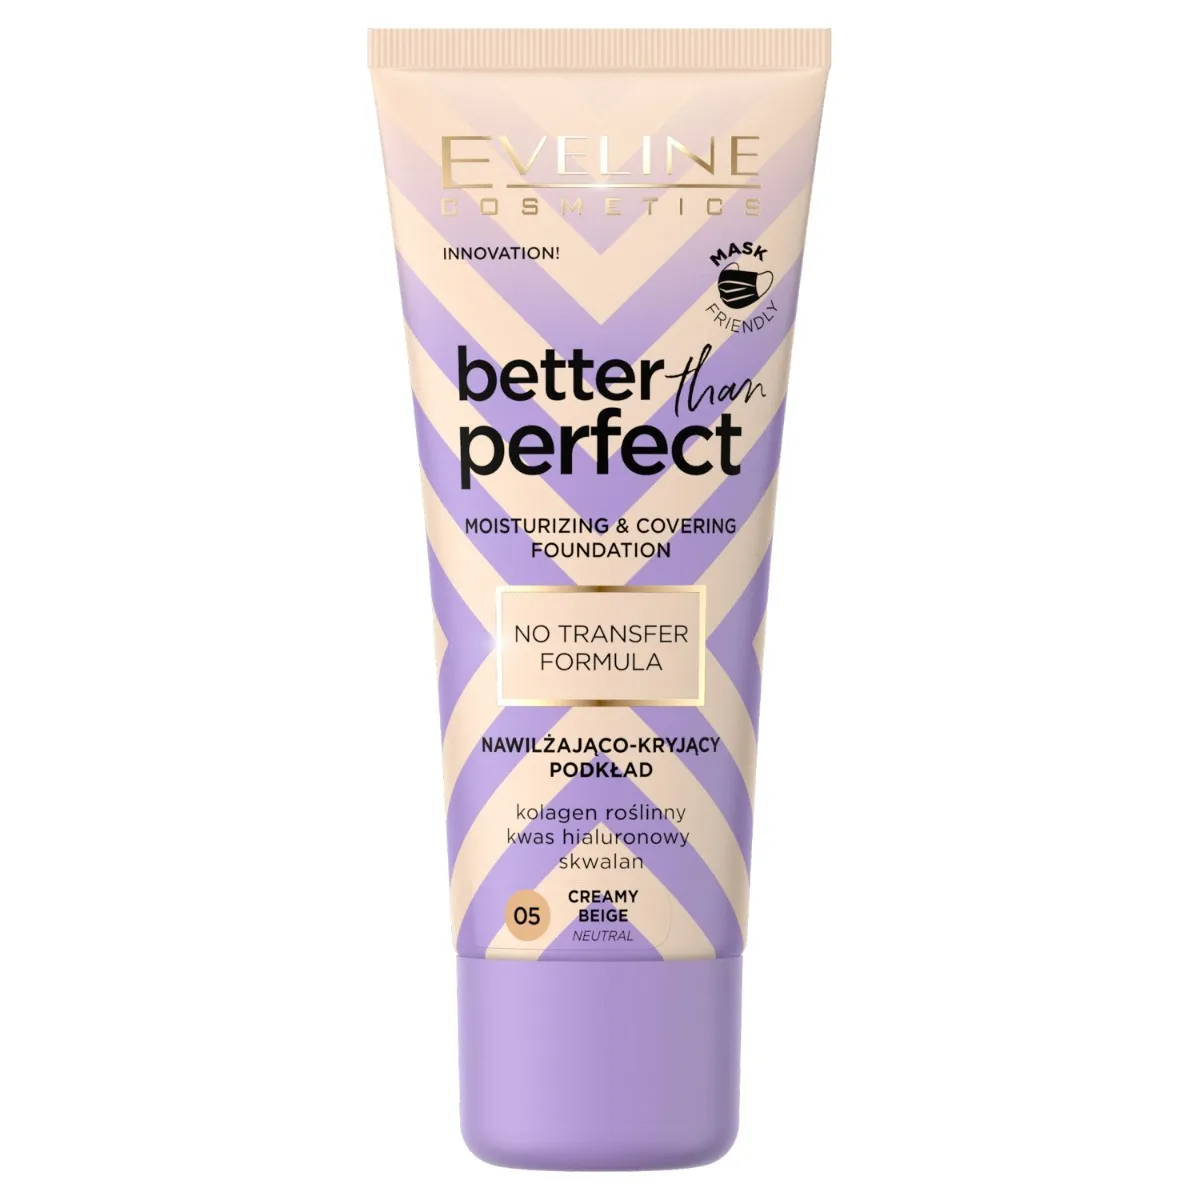 Eveline Cosmetics Better Than Perfect Nawilżająco-kryjący podkład z formułą No Transfer nr 05 Creamy Beige, 30 ml